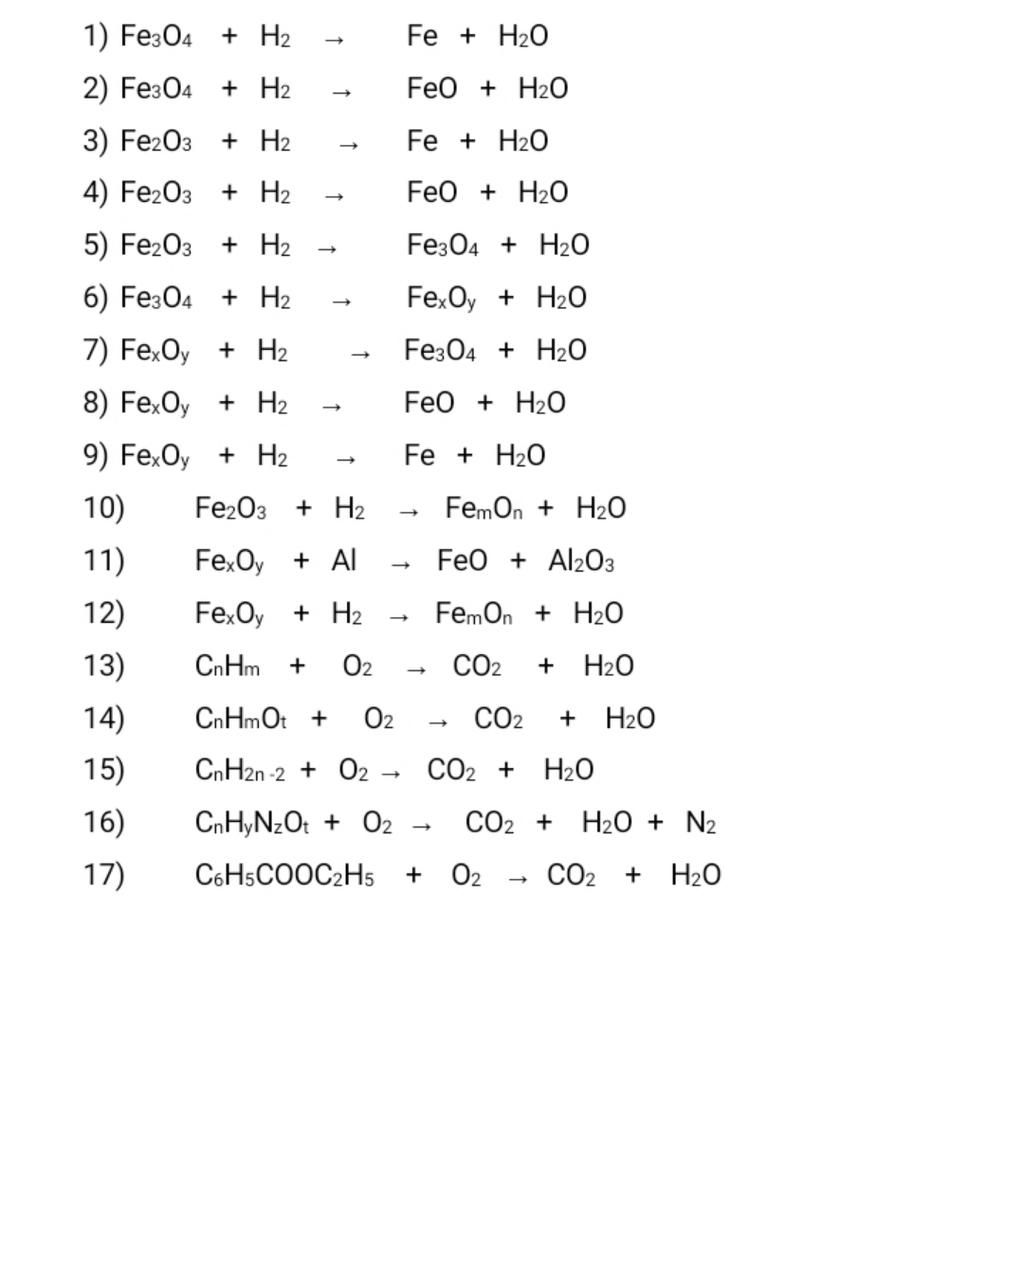 Phản ứng giữa H2 và Fe3O4 có tác dụng oxi-hoá hoặc khử?